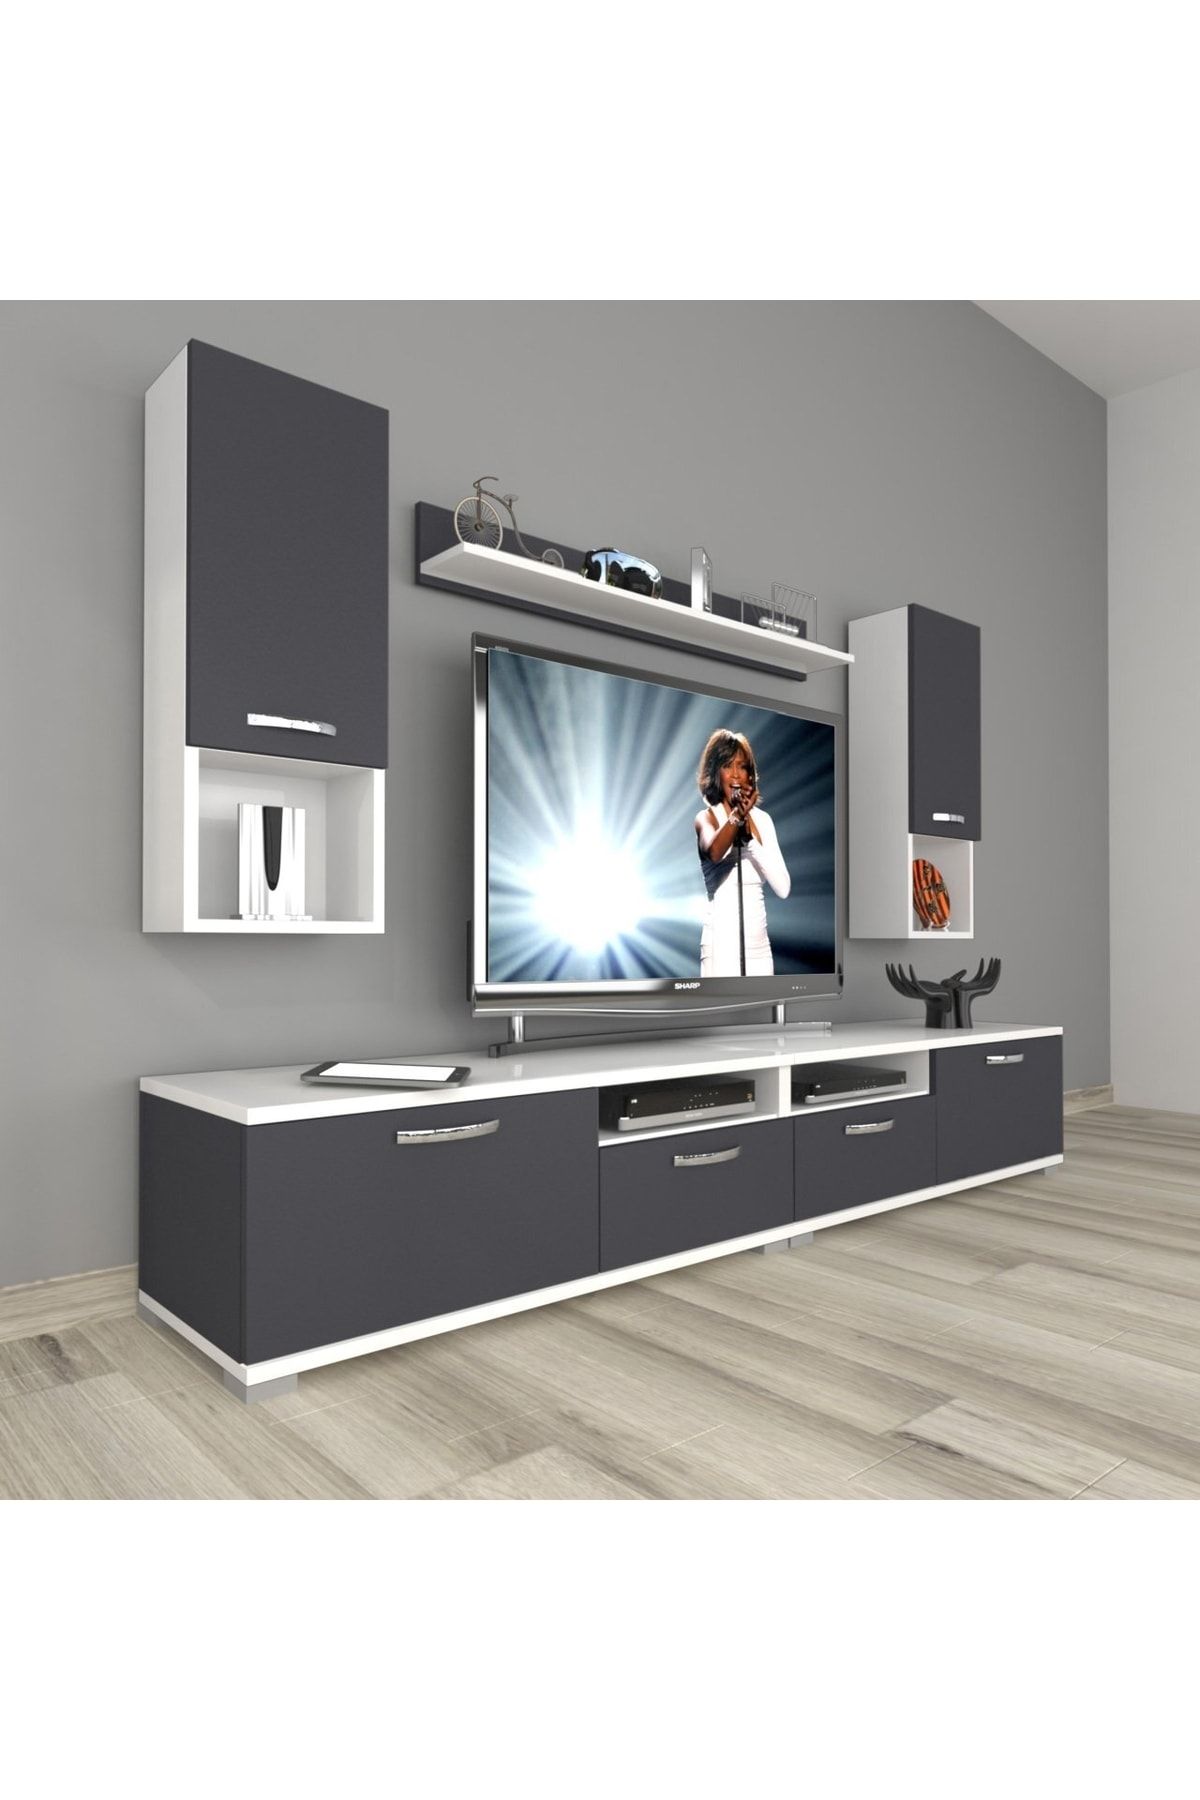 Decoraktiv Eko 5220da Mdf Tv Ünitesi Tv Sehpası - Beyaz - Antrasit